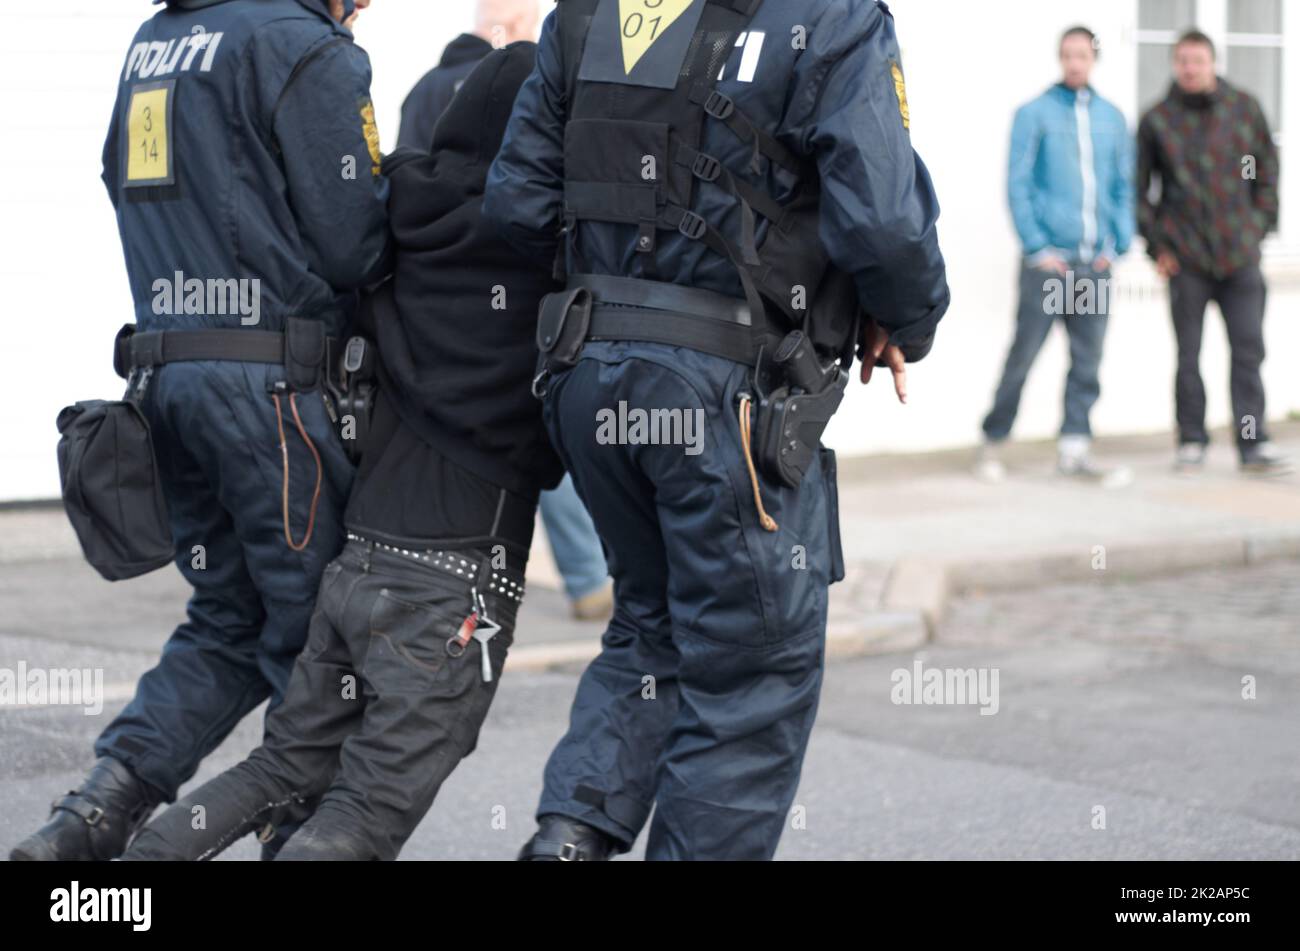 Beendigung der Protestaktion. Polizisten nahmen einen Susekten fest. Stockfoto